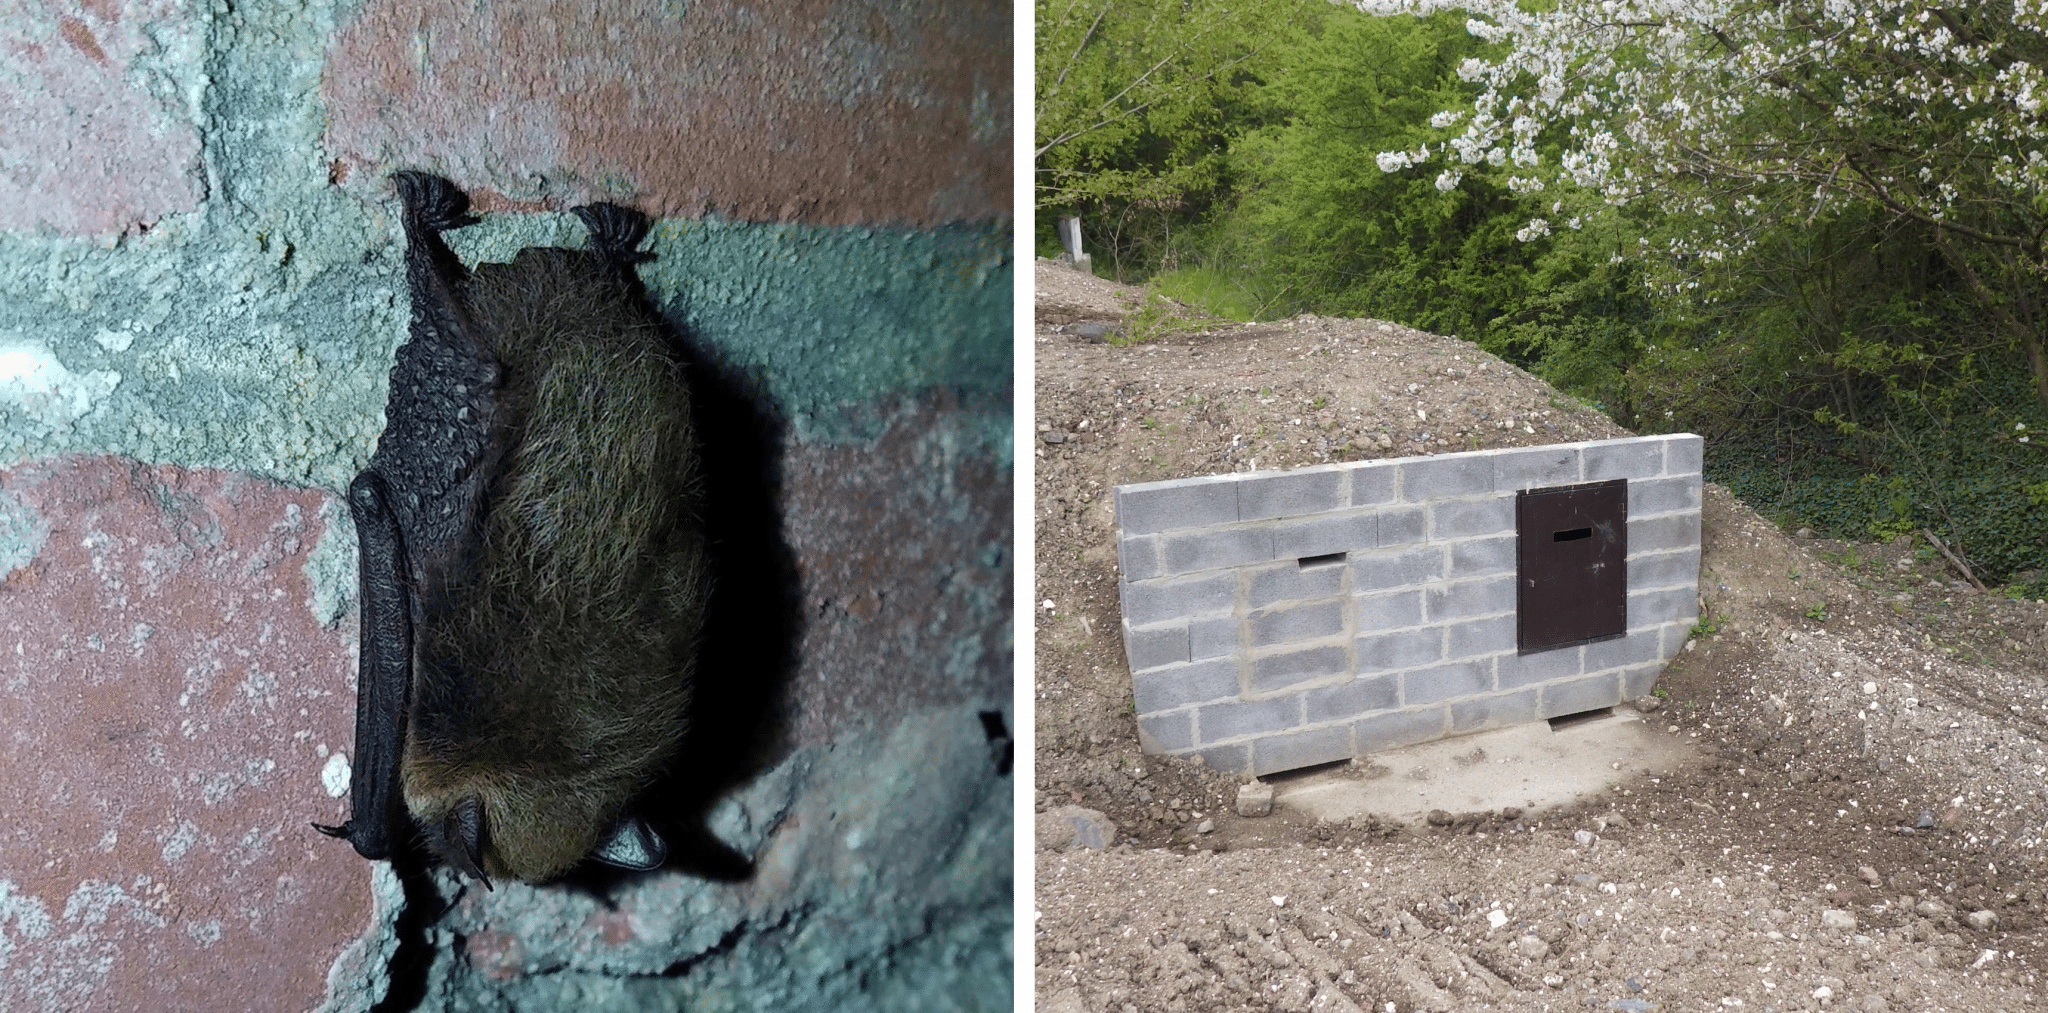 Chauve-souris et habitat pour pour la chauve-souris à Loison-sous-Lens